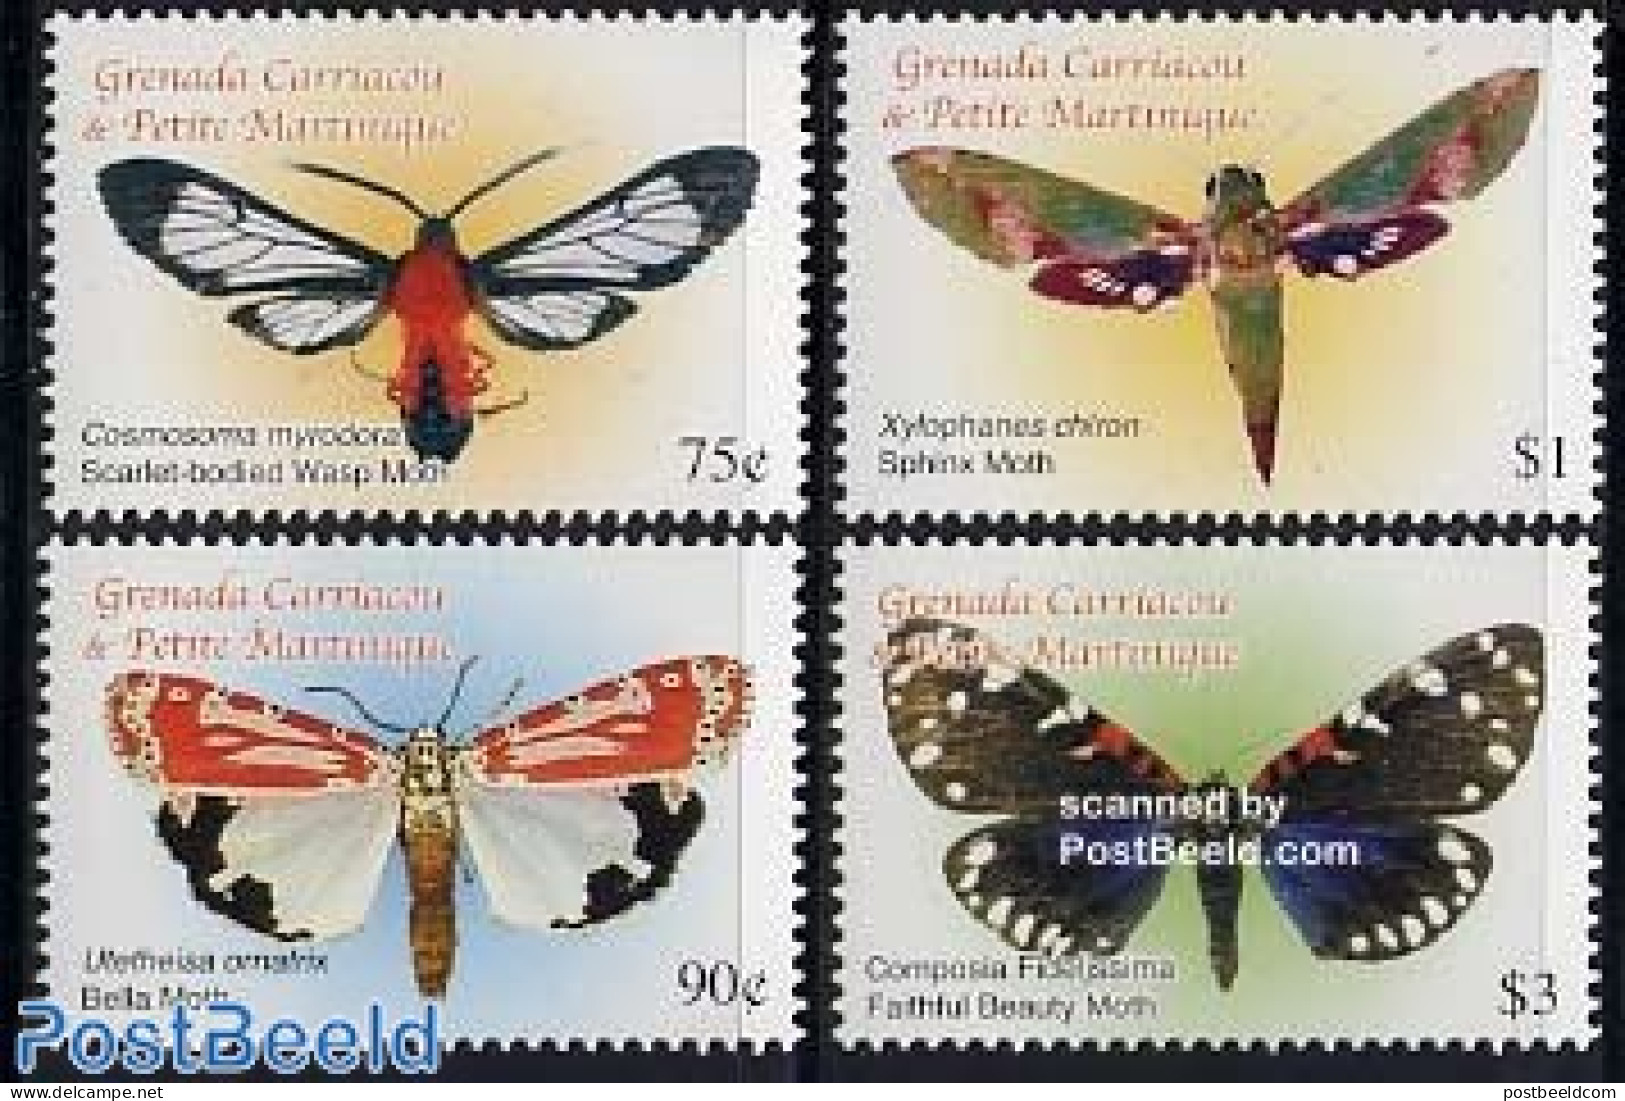 Grenada Grenadines 2005 Moth 4v, Cosmosoma Myrodora, Mint NH, Nature - Butterflies - Grenada (1974-...)